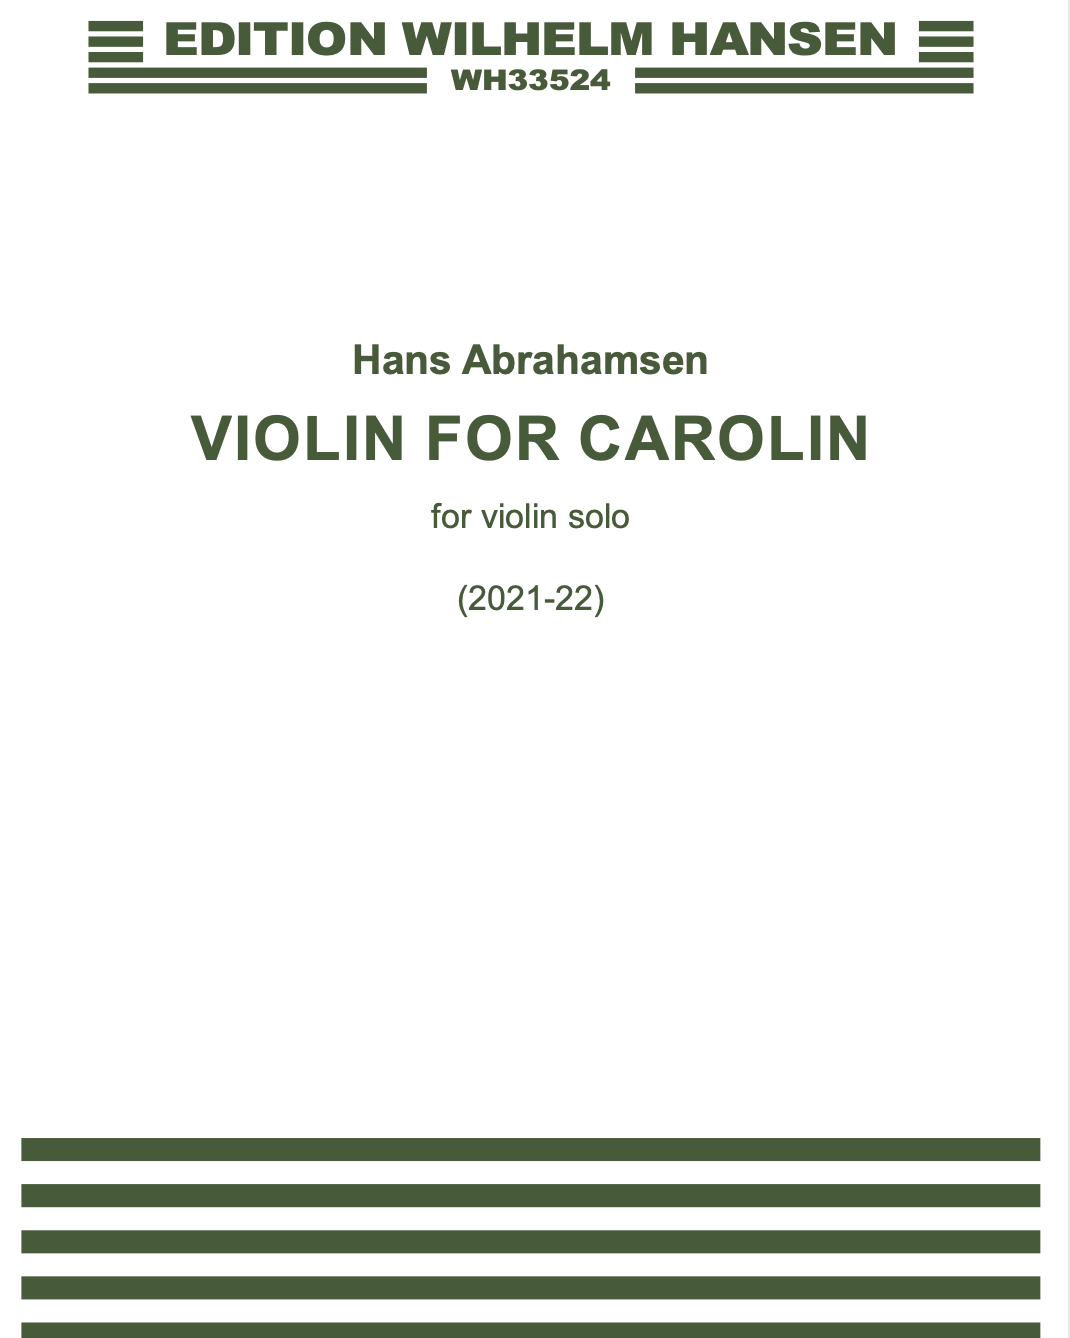 Violin for Carolin